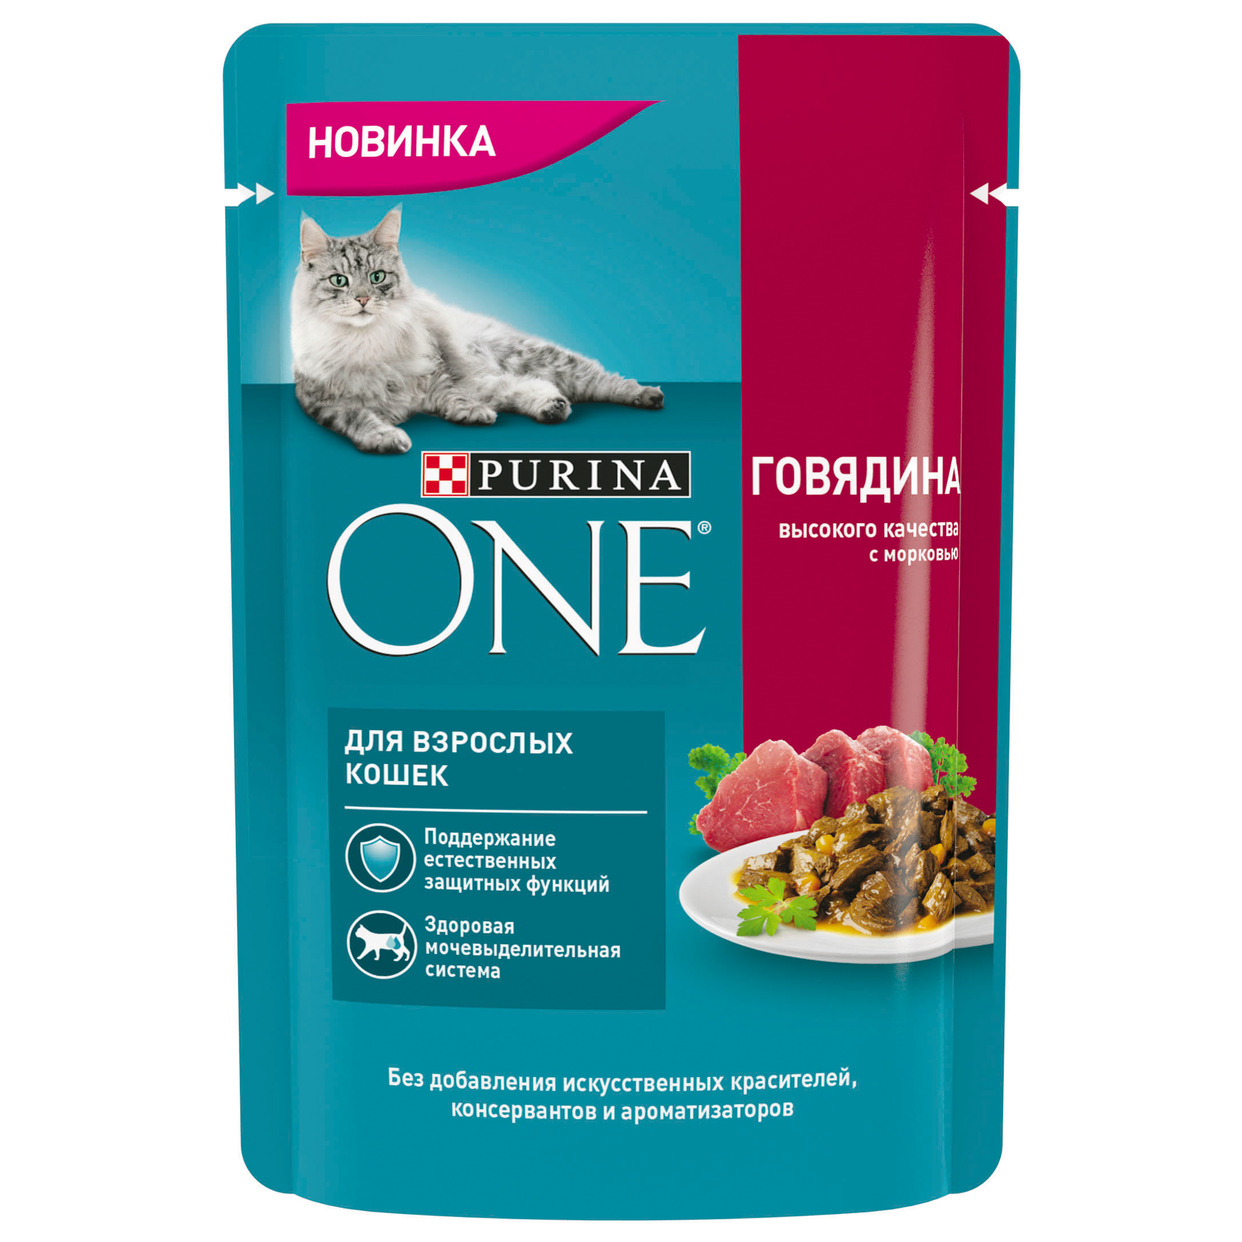 PURINA ONE® (ПУРИНА УАН) Корм консервированный полнорационный для взрослых кошек, с говядиной высокого качества и морковью, 75 гр по акции в Пятерочке